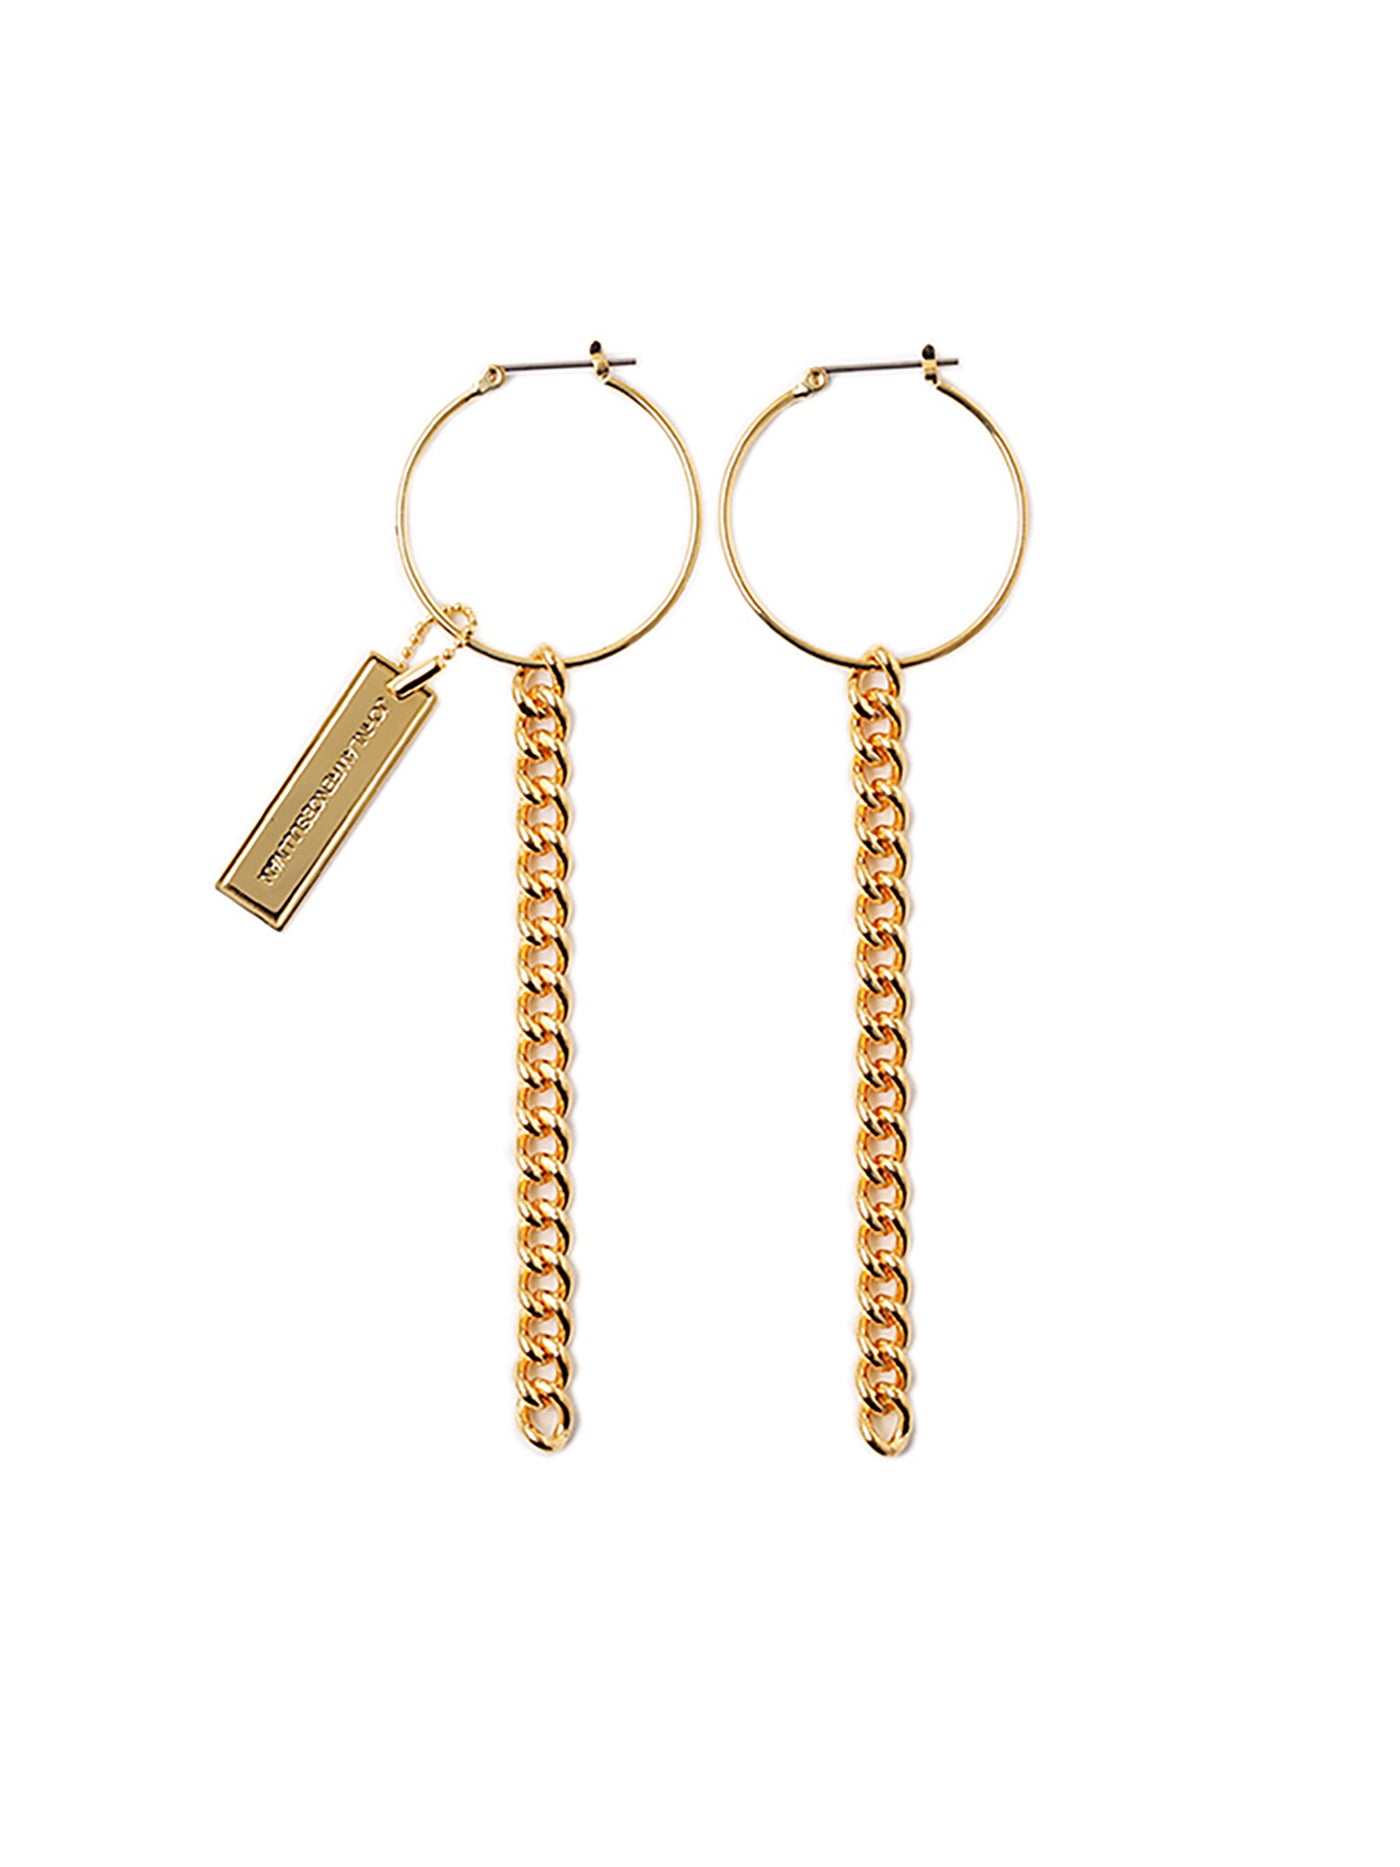 Chain hoop earrings (pair)